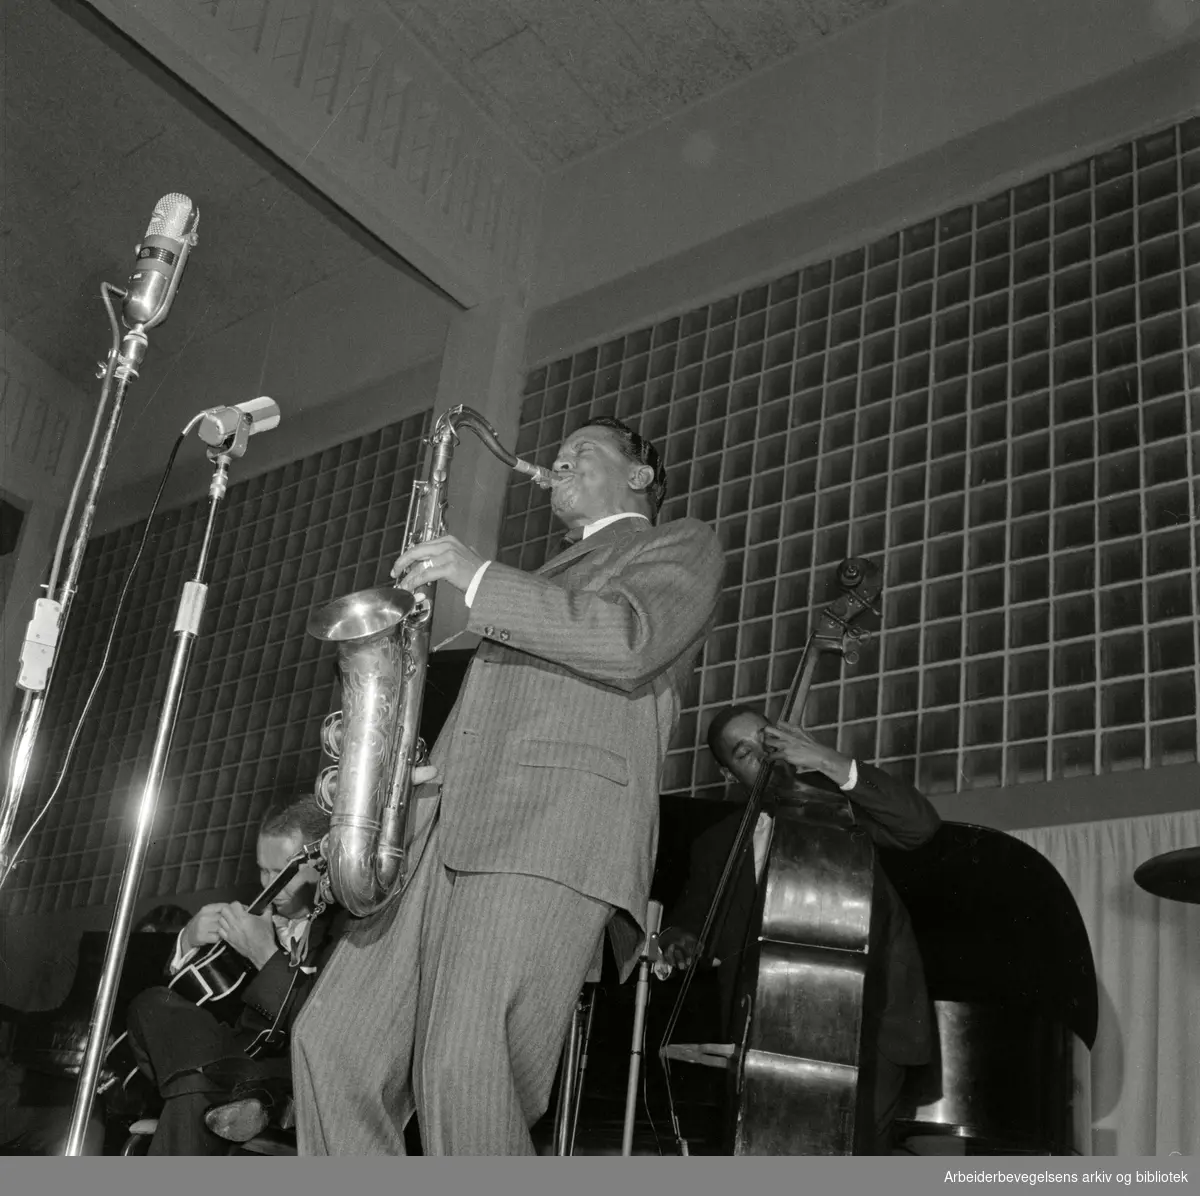 Jazz at the Philharmonic besøker Oslo februar 1956. Konsert i Nordstrandshallen. Fra venstre: gitarist Herb Ellis, Illinois Jacquet på tenorsaksofon og Ray Brown på bass.